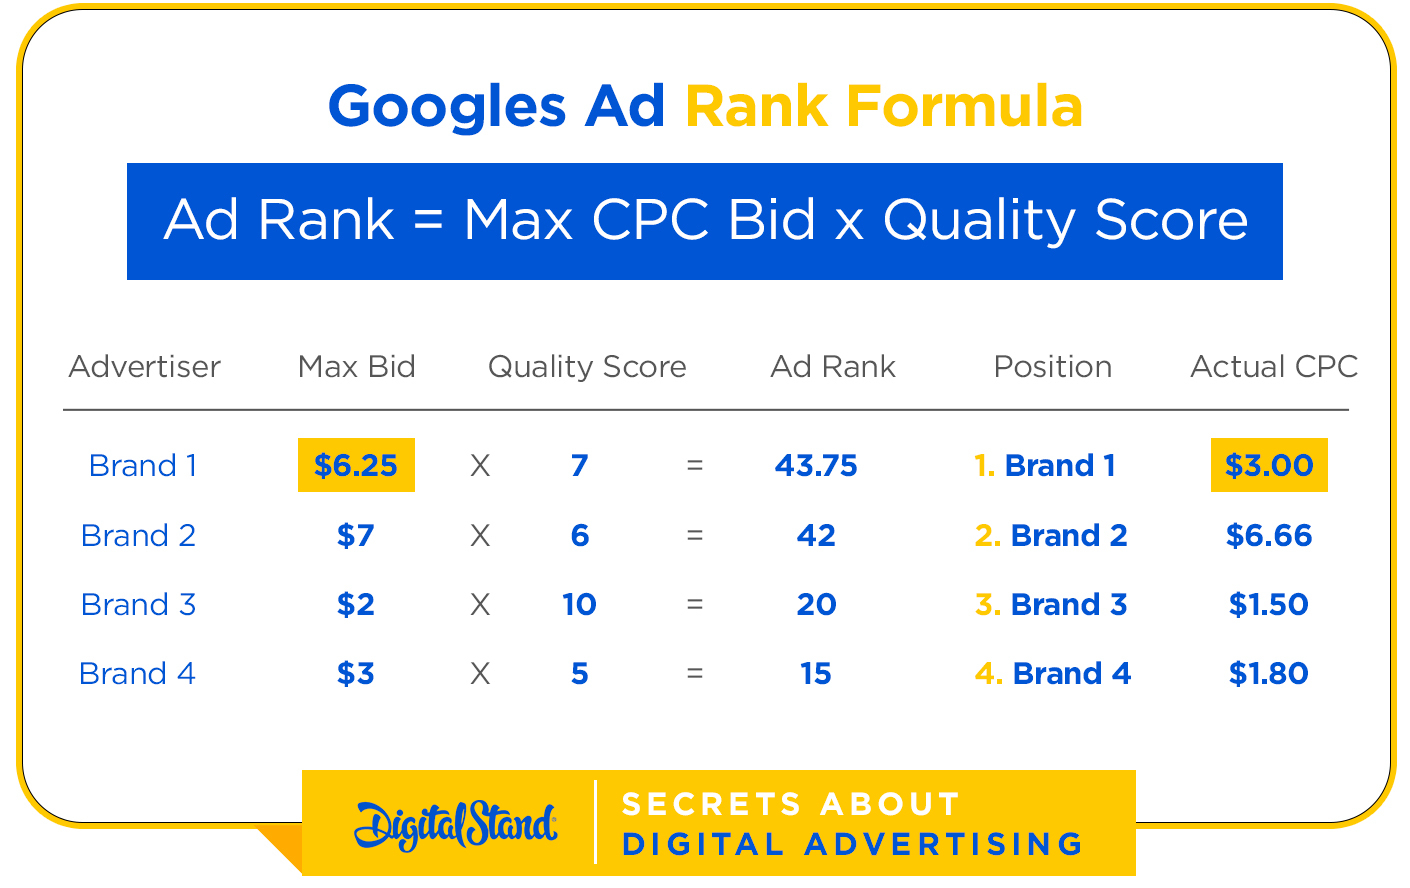 Googles Ad Rank Formula